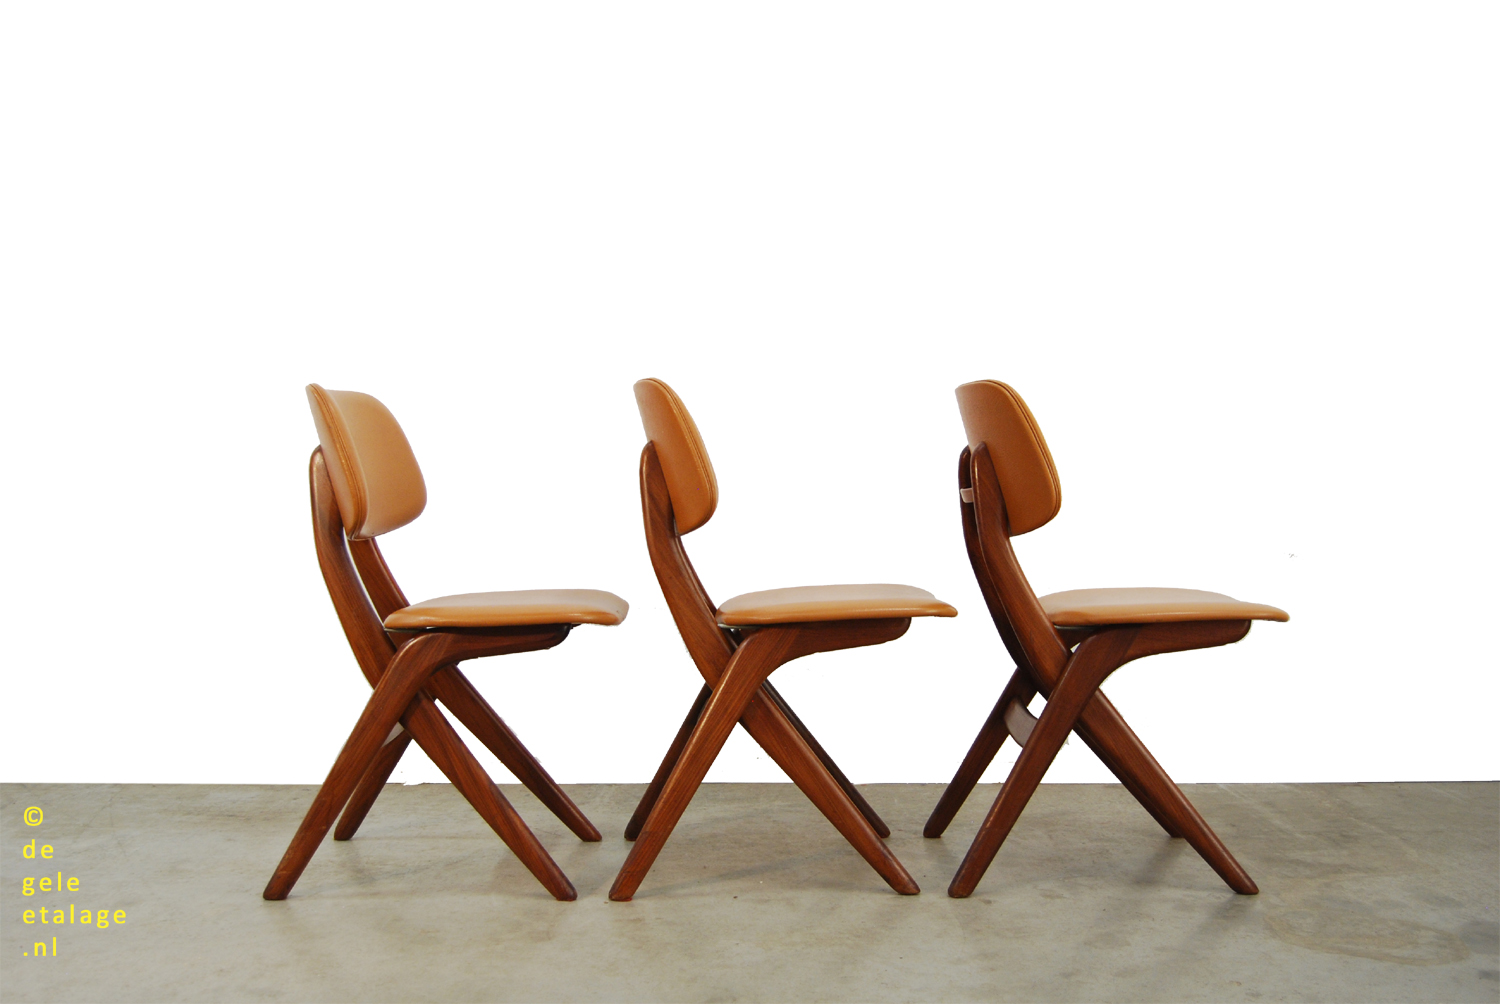 Ampère Namaak knal SALE / Vintage teakhouten eettafel stoelen / Louis van Teeffelen / Webe /  1960s / scissor chairs | DE GELE ETALAGE